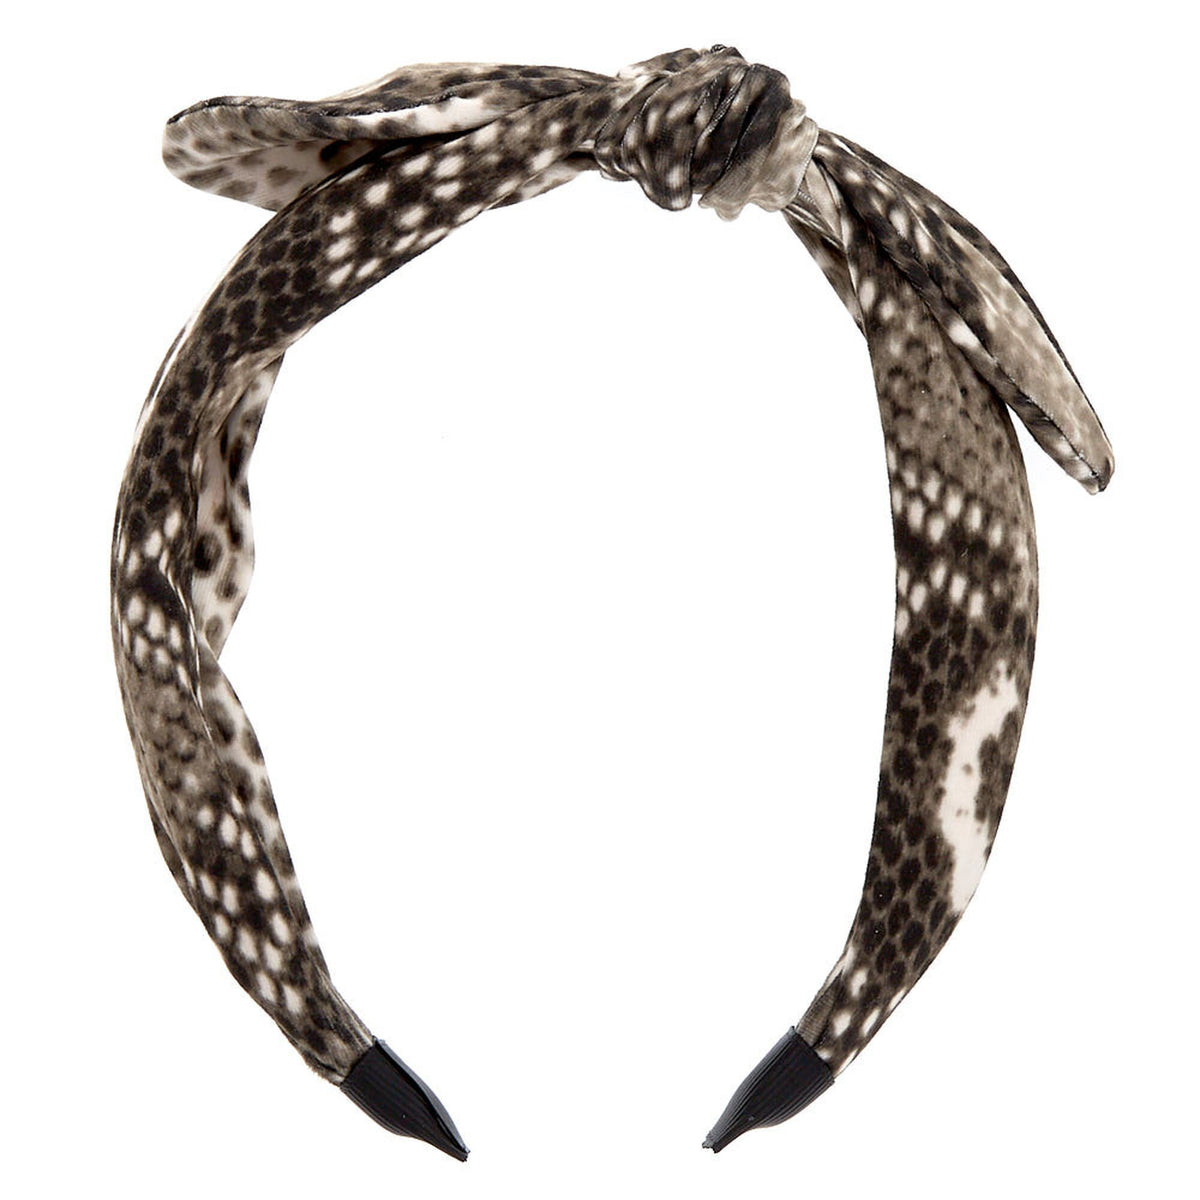 Snakeskin Headband